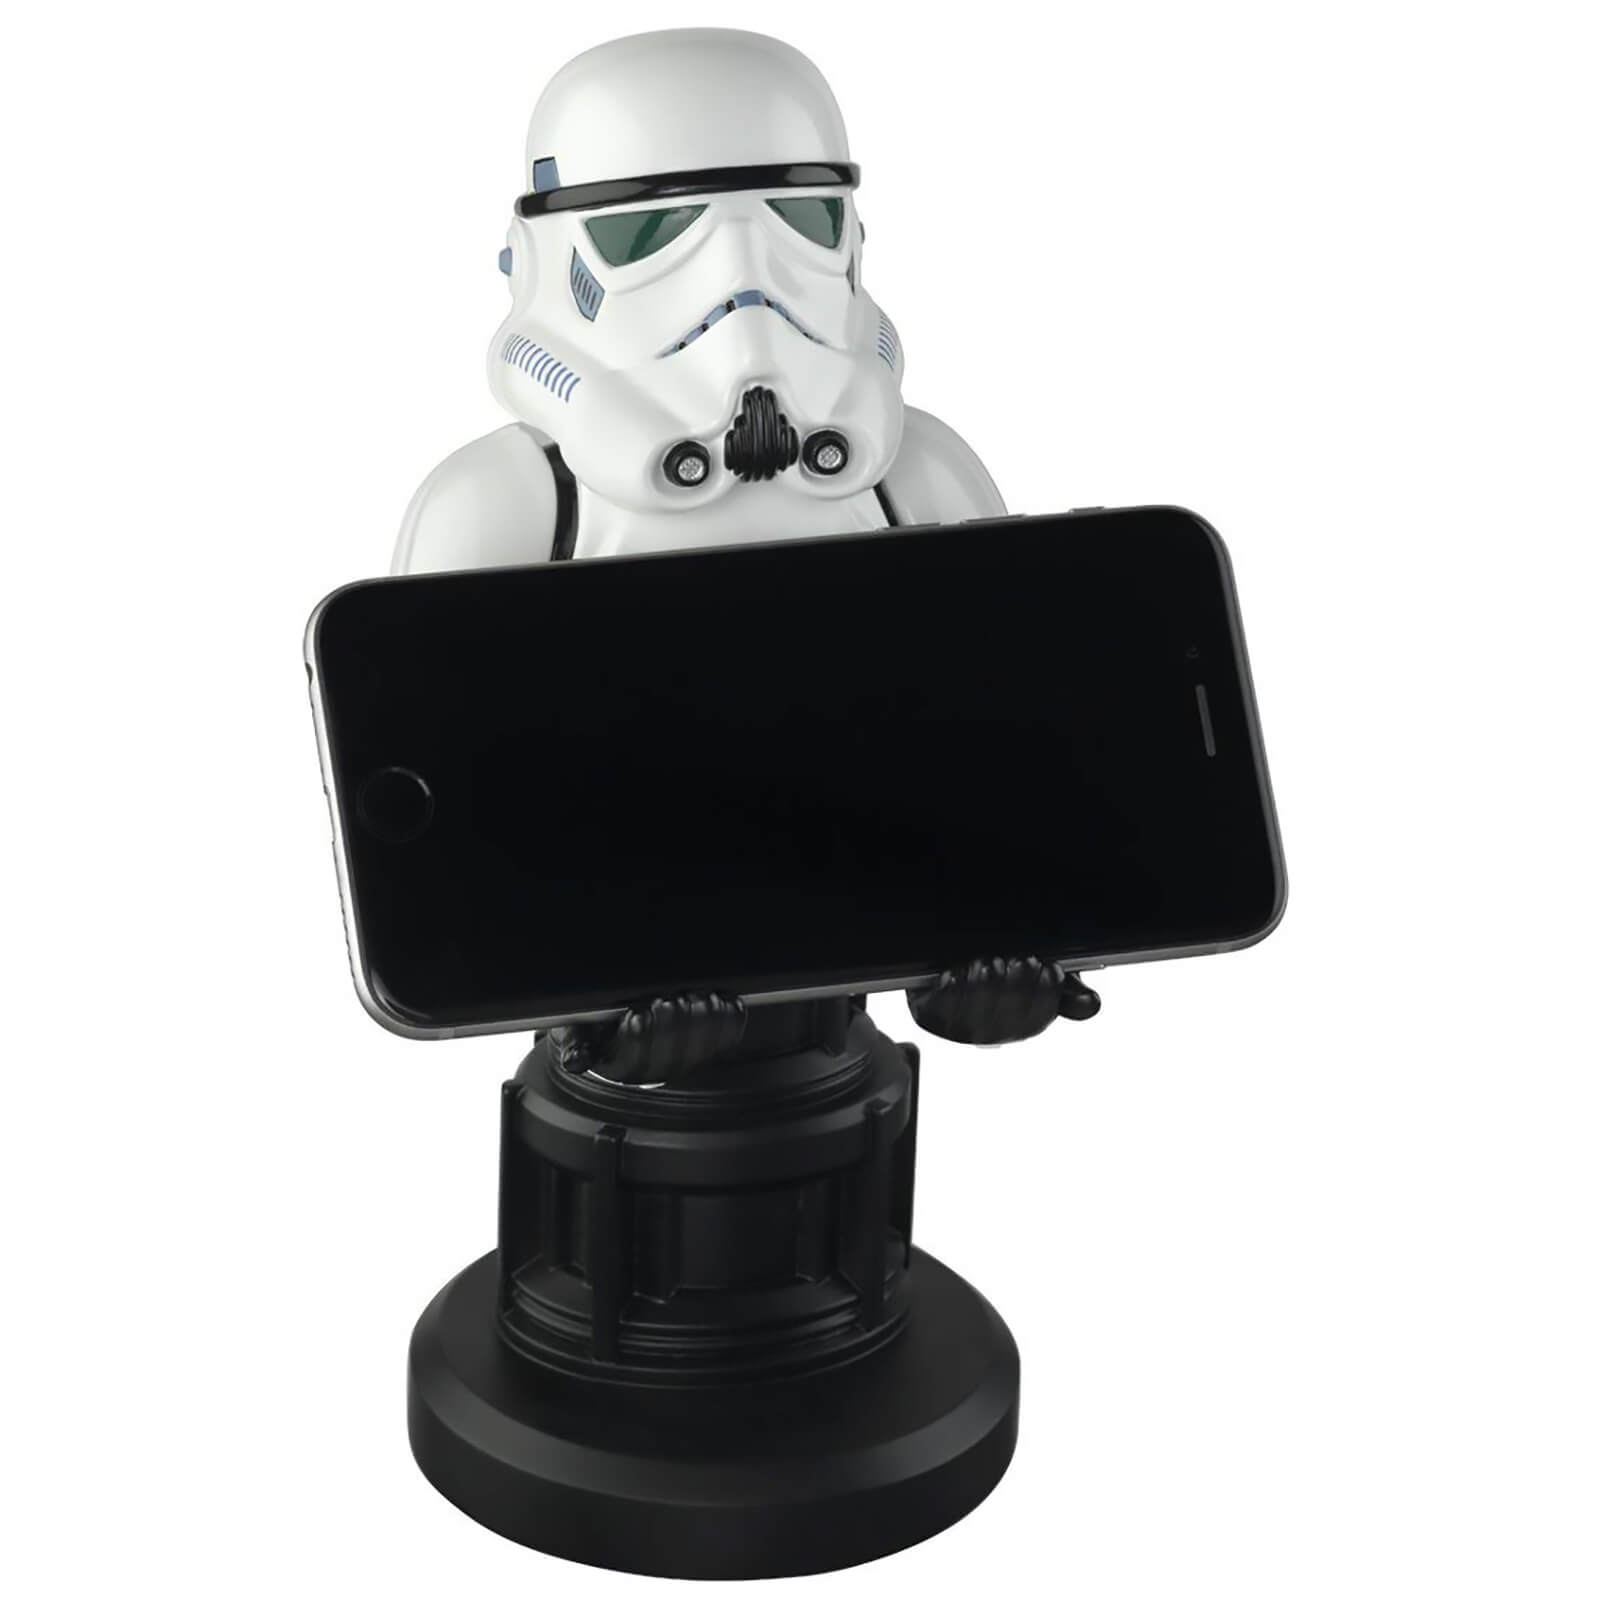 Cable Guys Objet de Collection Stormtrooper Star Wars Manette et Socle pour smartphone de 20,3 cm